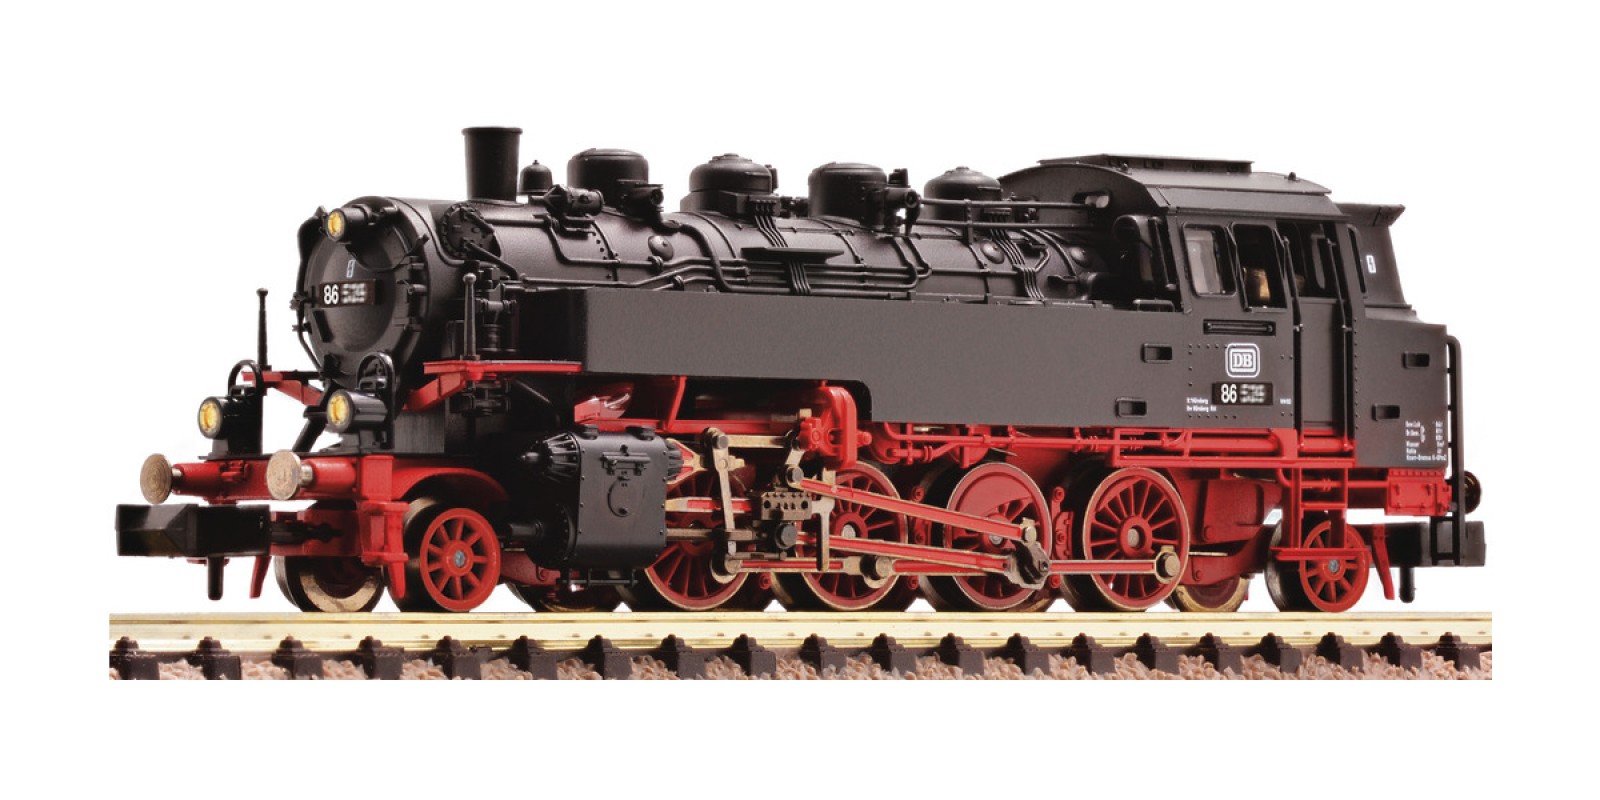 FL708683 Steam locomotive class 86, DB